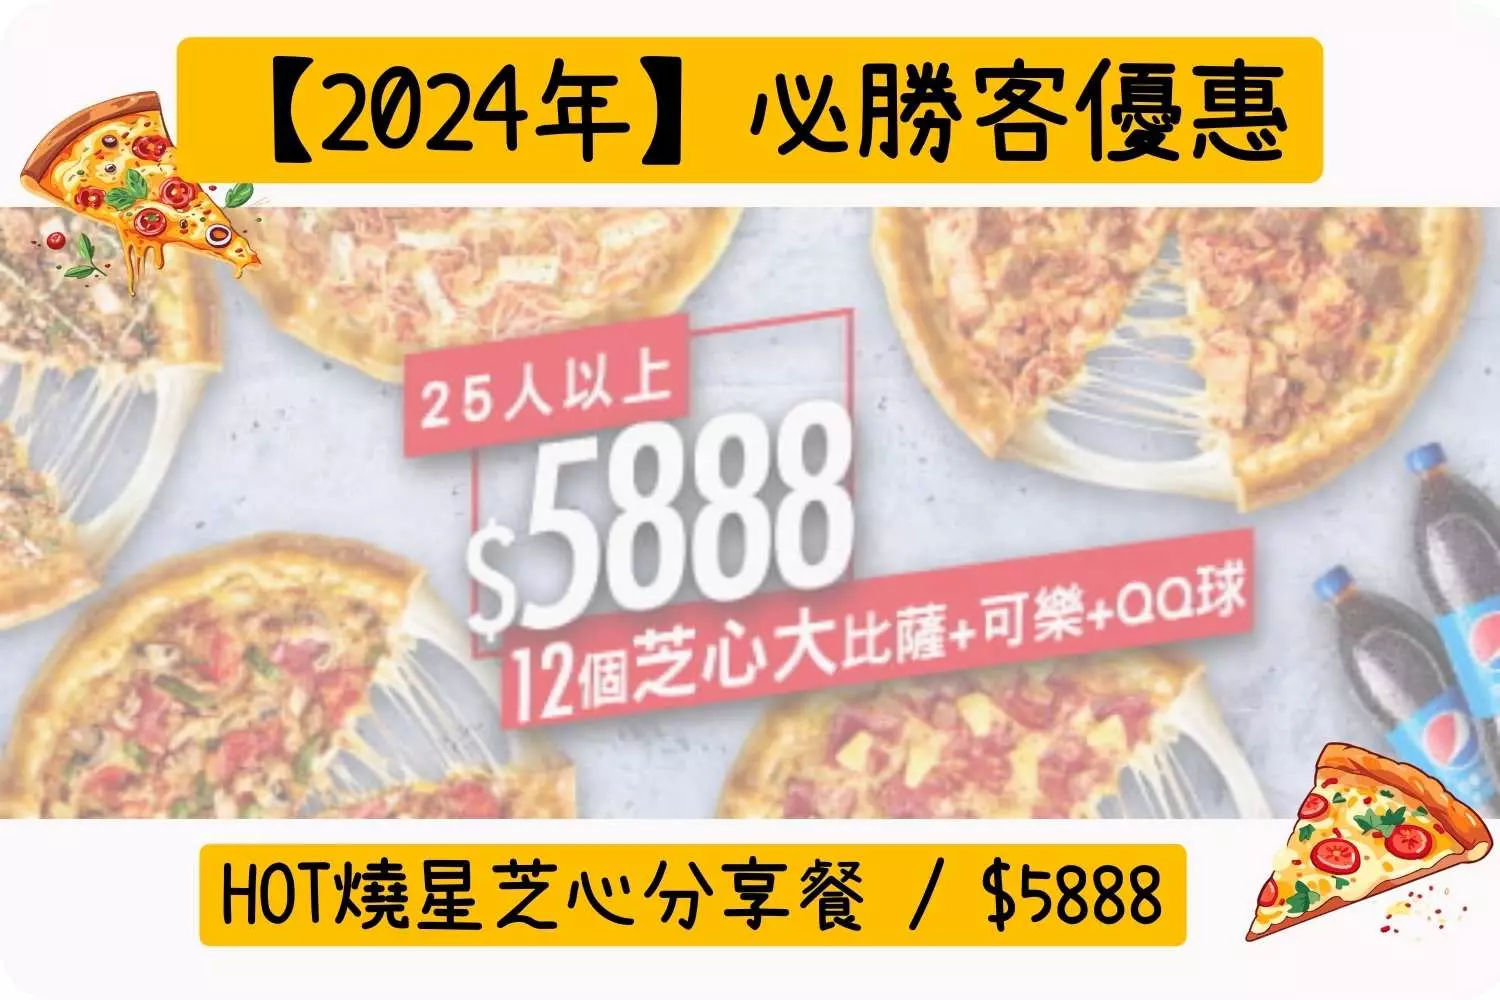 HOT燒星芝心分享餐/$5888